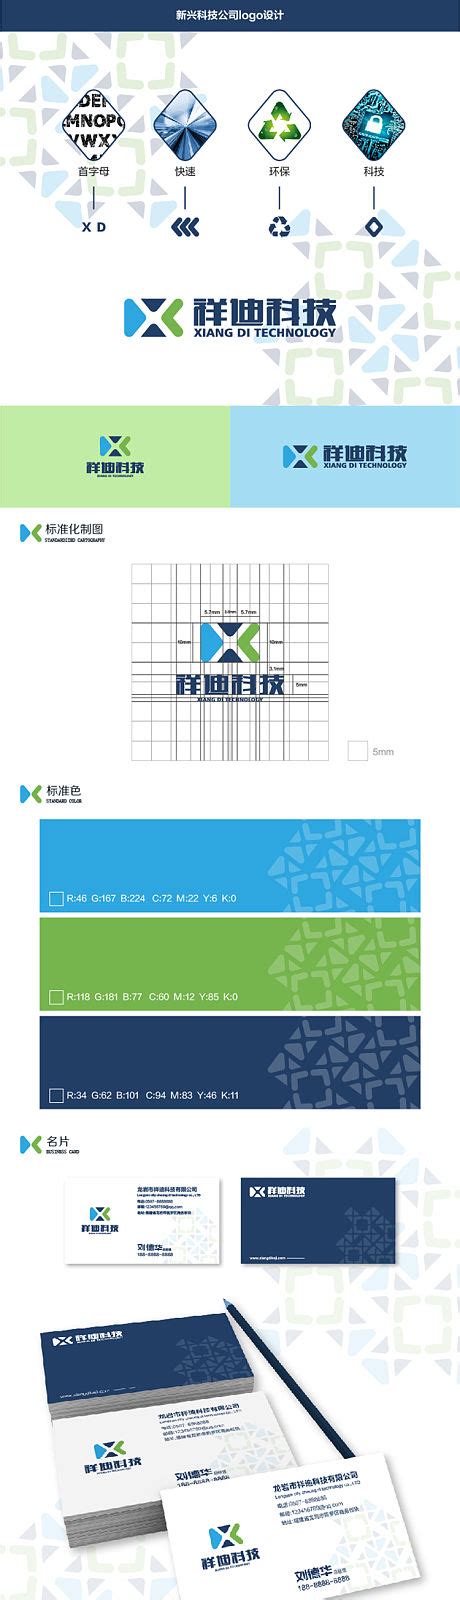 科技网络技术公司企业vi手册AI广告设计素材海报模板免费下载-享设计